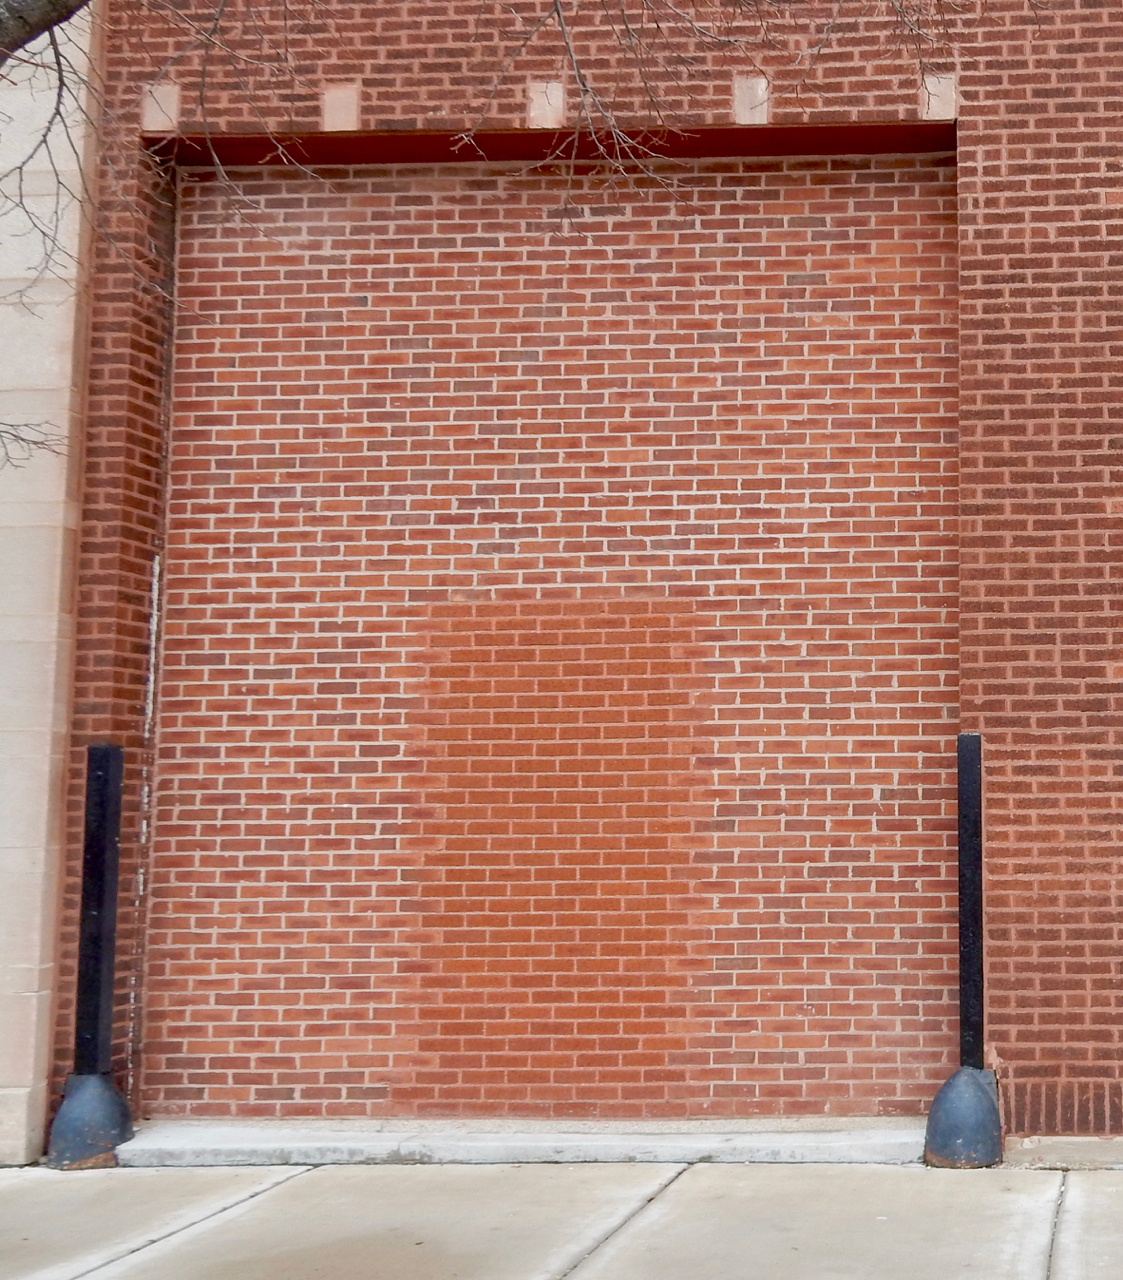 Bricked-in door within a bigger bricked-in door